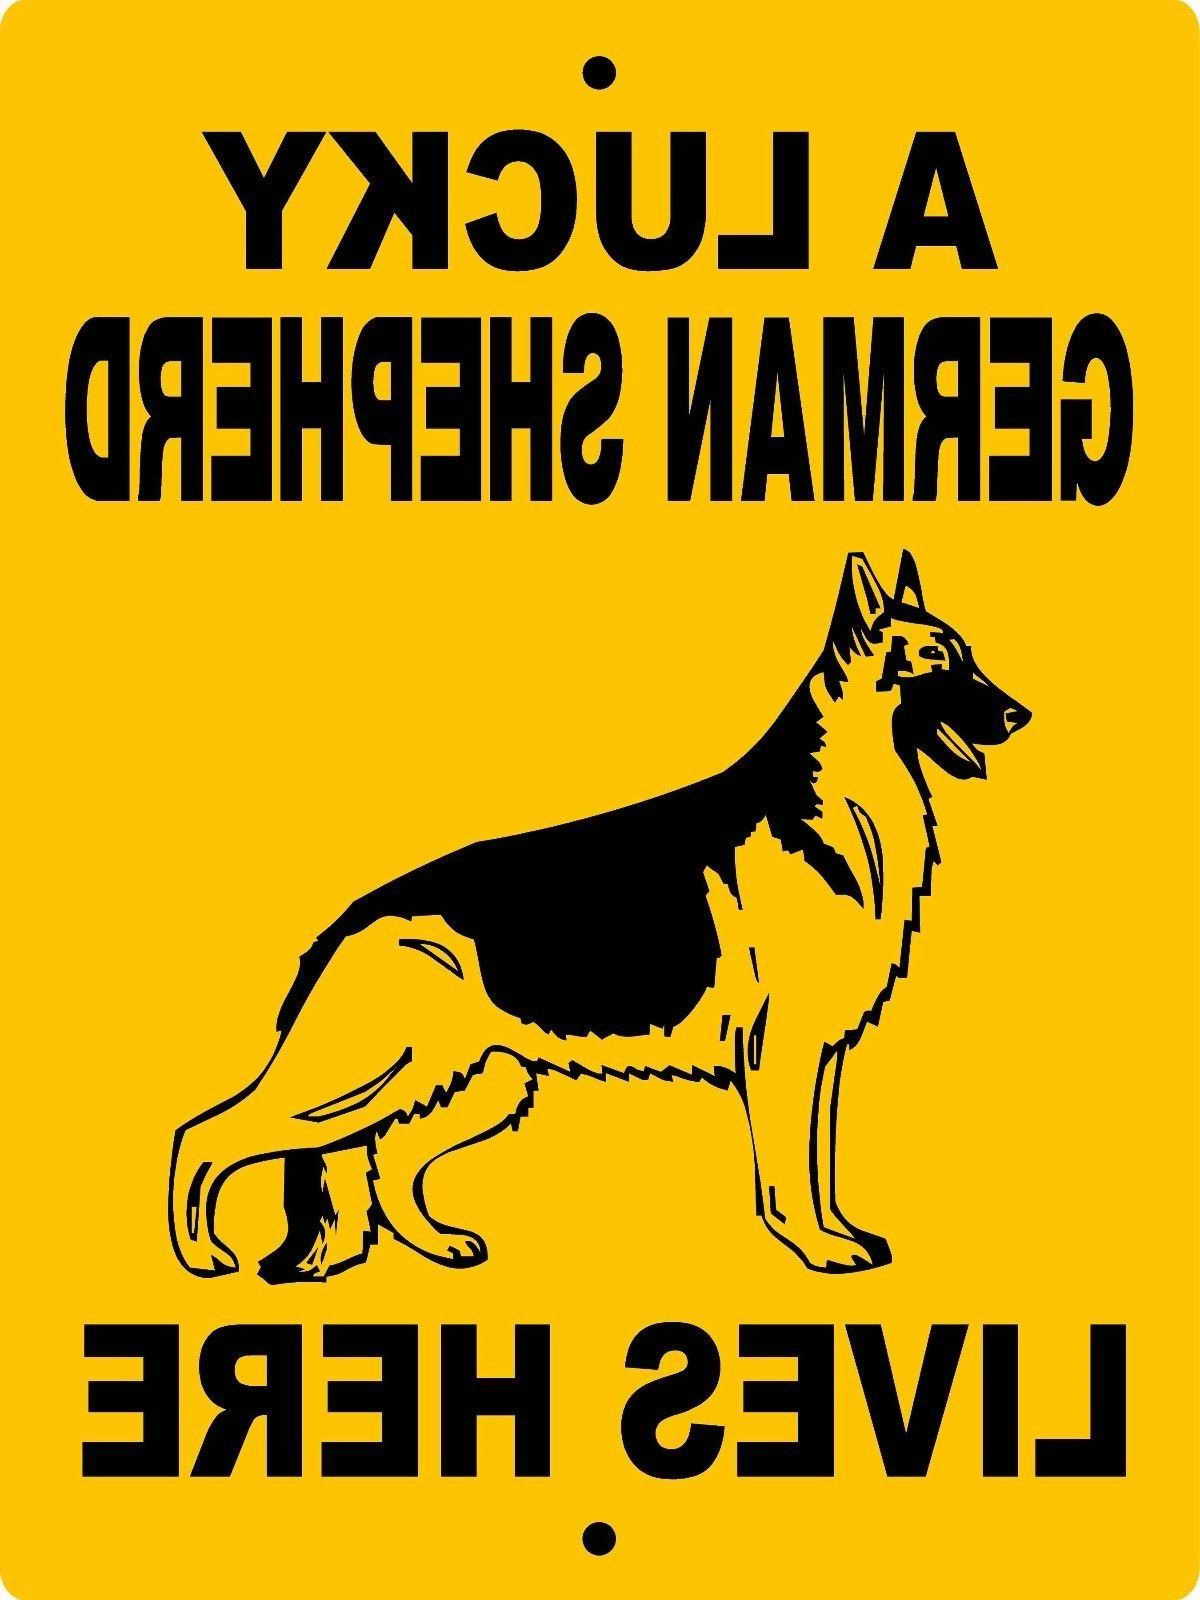 German Shepherd Dog Signs